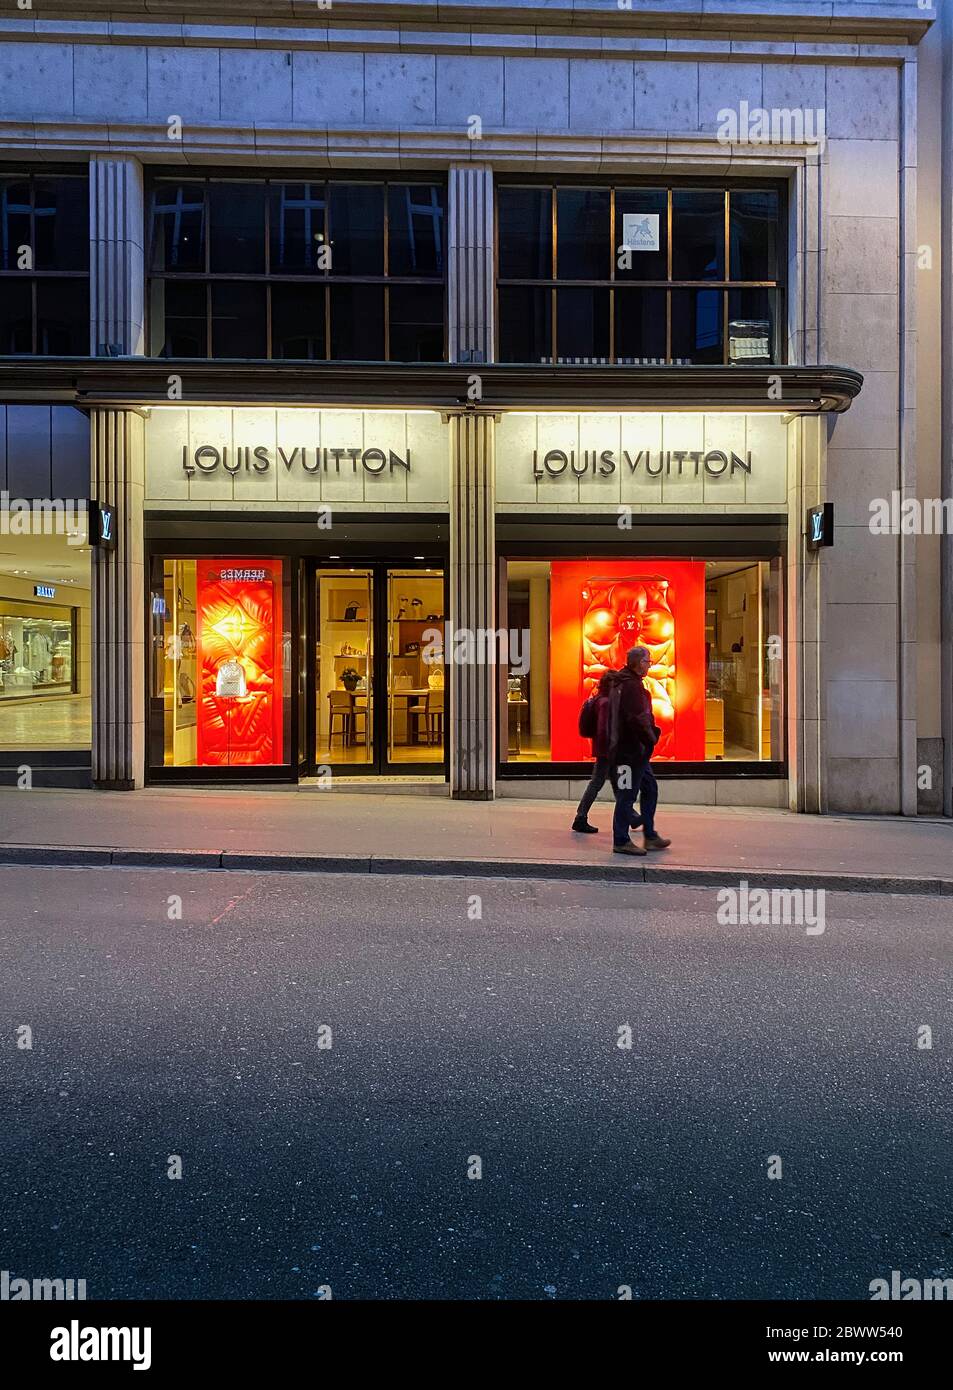 Louis Vuitton Shop Stock Photo - Download Image Now - Louis